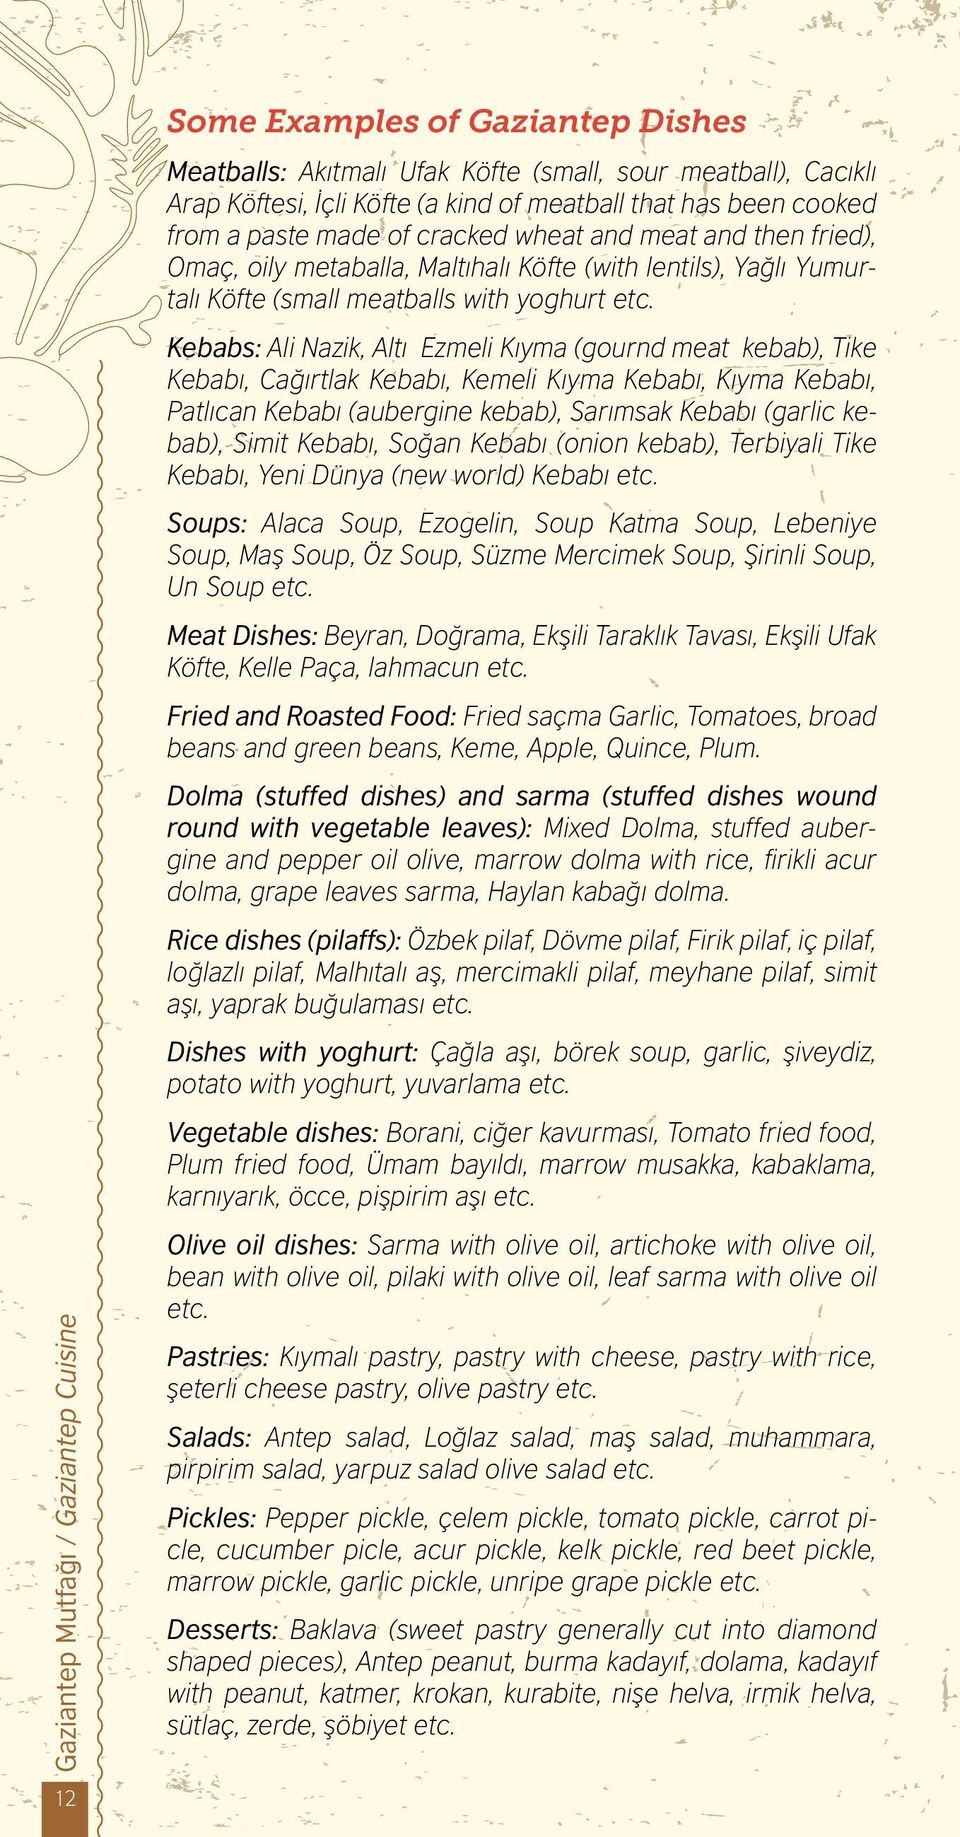 Kebabs: Ali Nazik, Altı Ezmeli Kıyma (gournd meat kebab), Tike Kebabı, Cağırtlak Kebabı, Kemeli Kıyma Kebabı, Kıyma Kebabı, Patlıcan Kebabı (aubergine kebab), Sarımsak Kebabı (garlic kebab), Simit